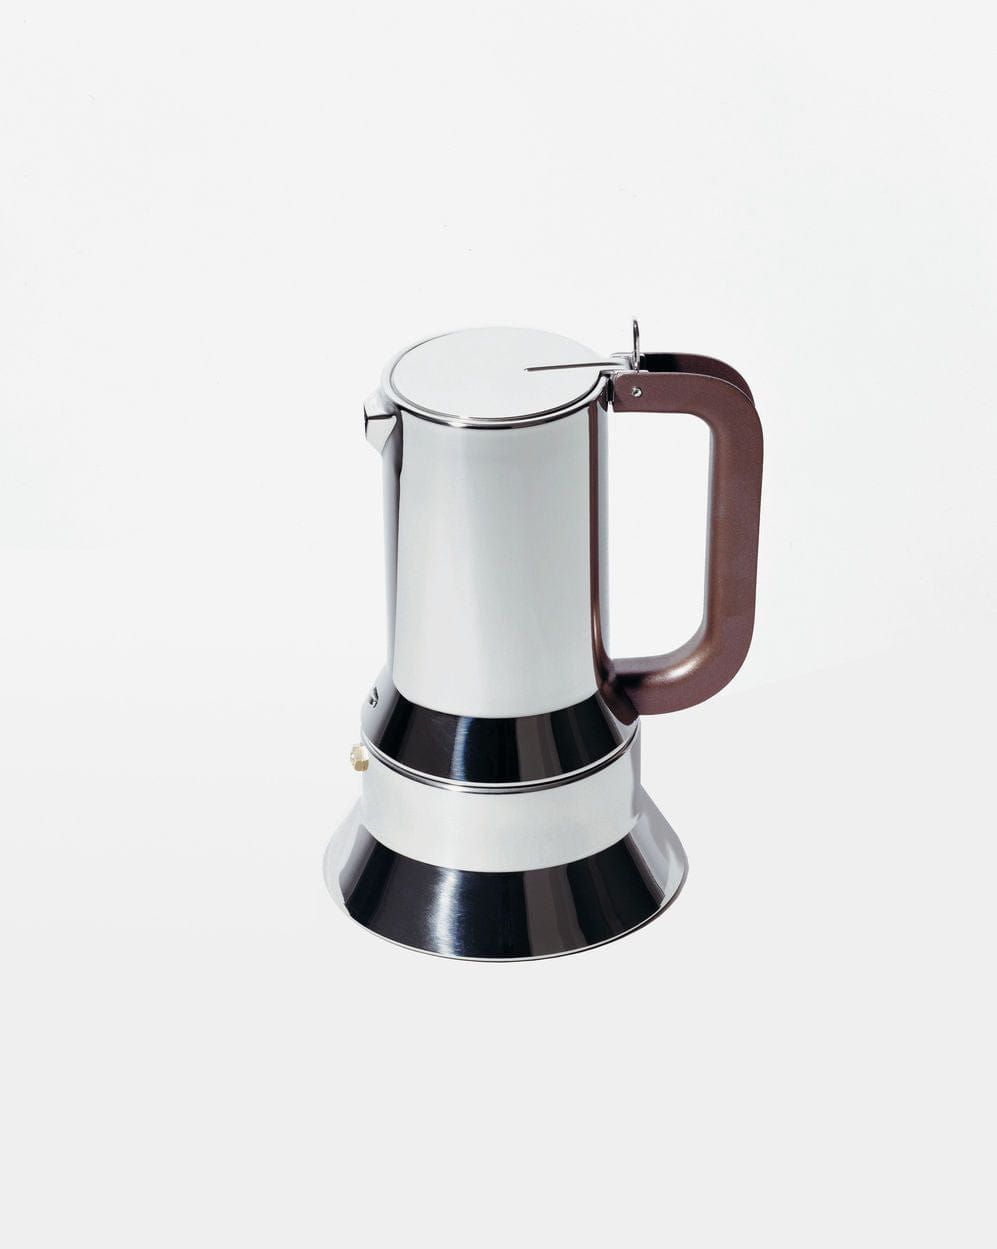 Alessi 9090 Espresso/Coffee Maker, 1 Cup